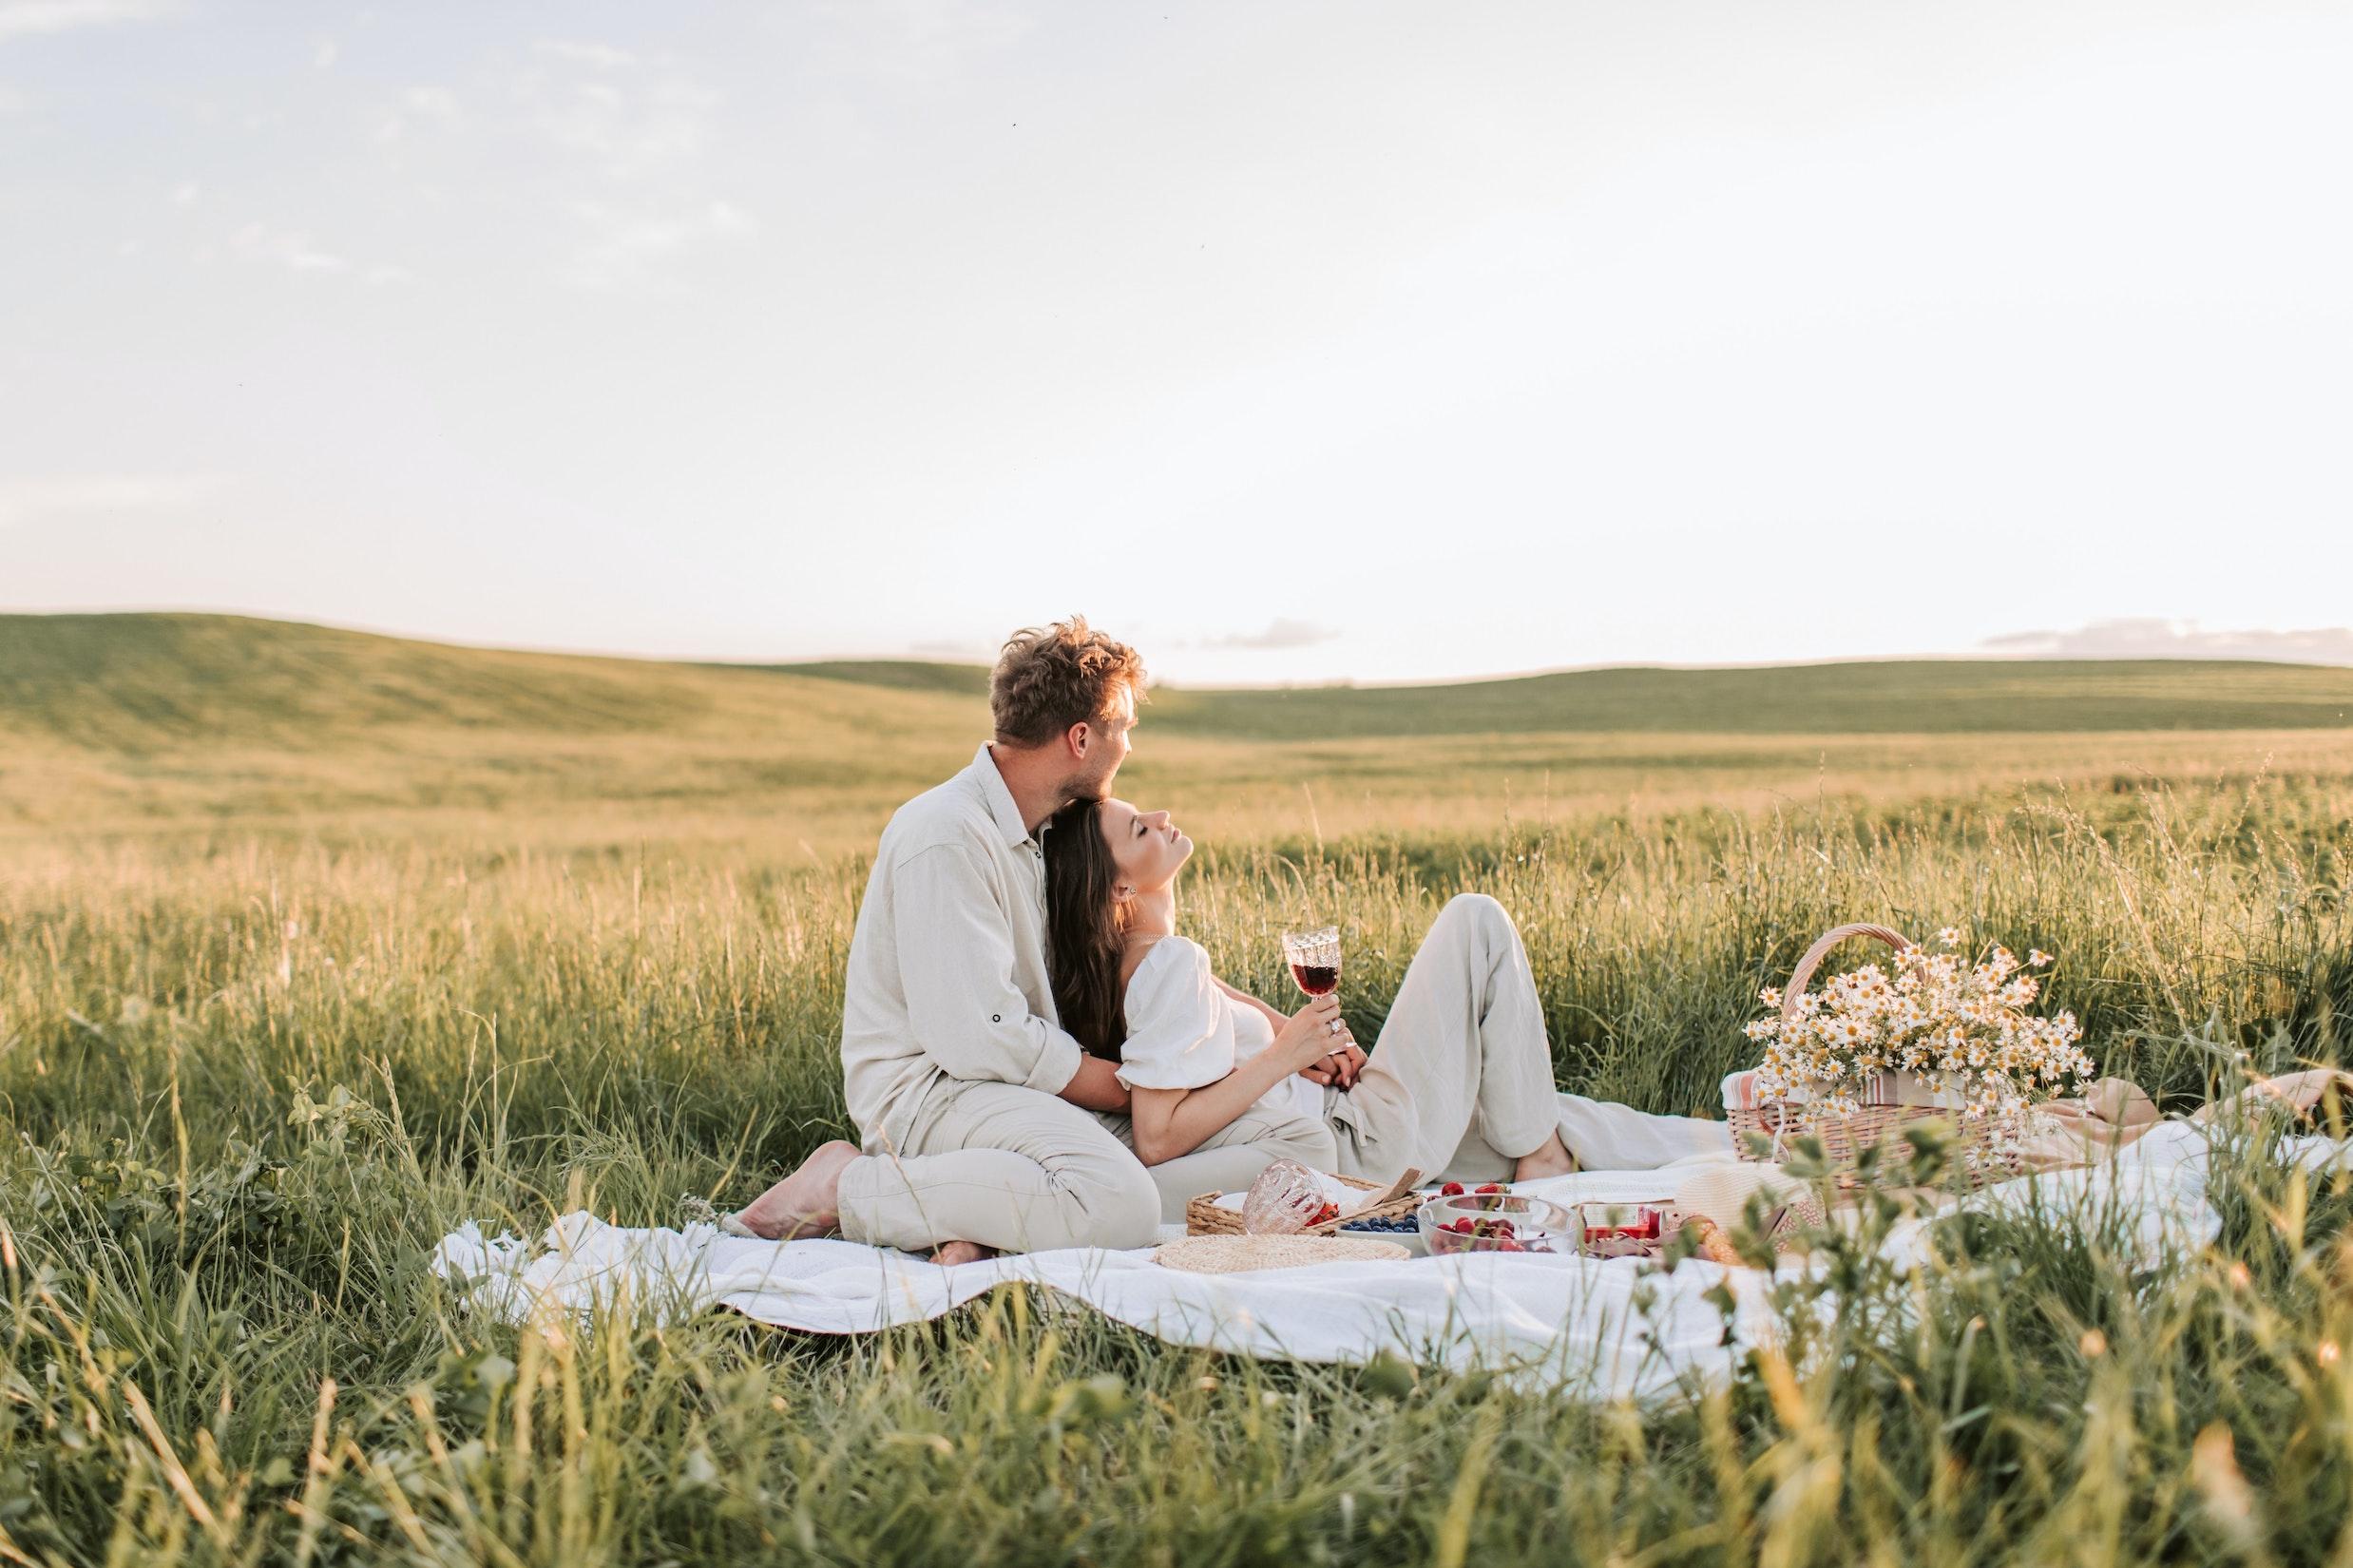 28 x wat je nodig hebt voor een romantische picknick